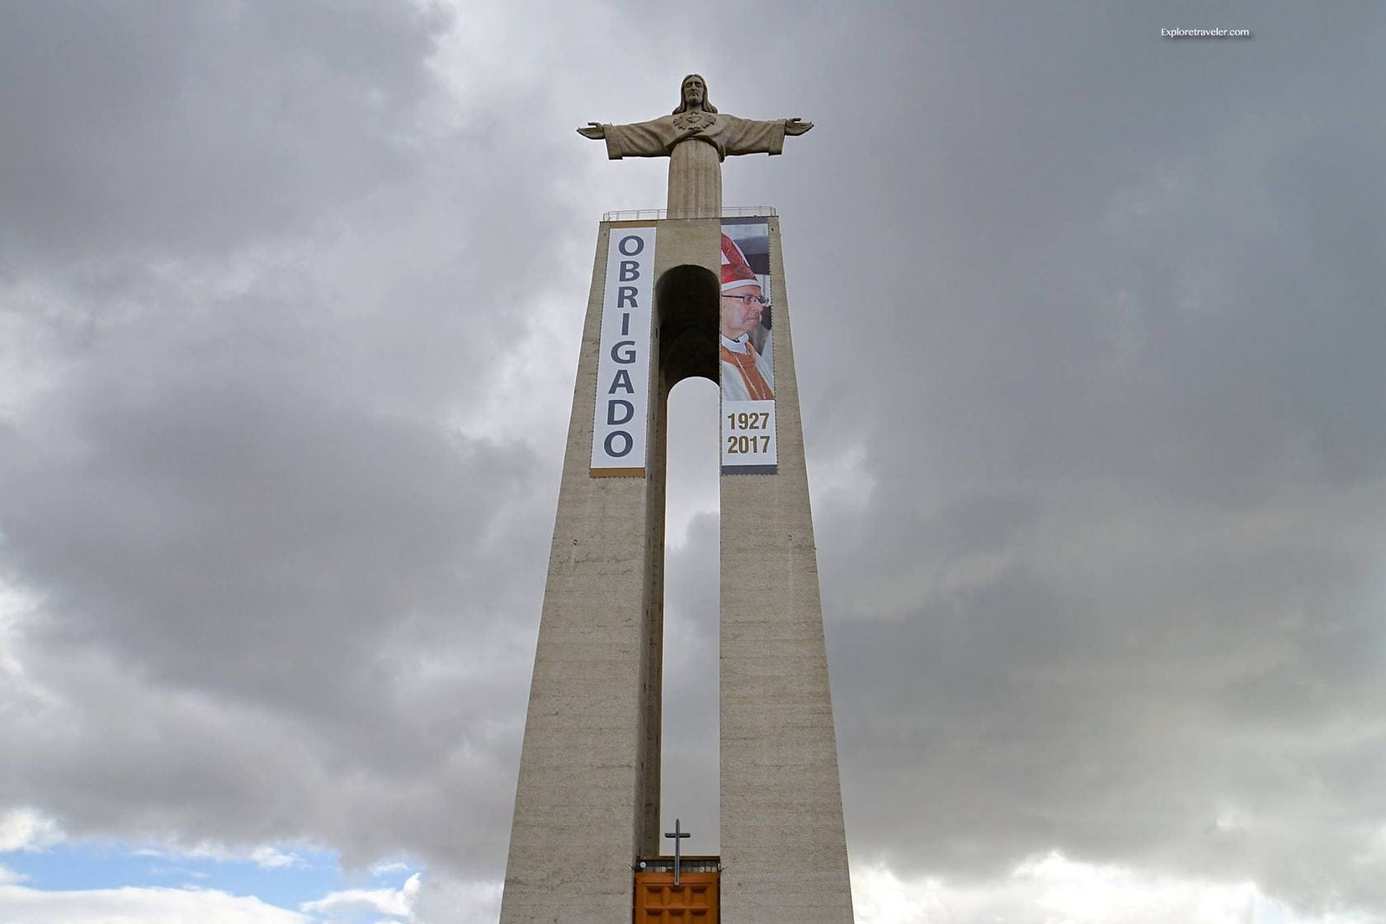 ExploreTraveler يعرض: استكشاف لشبونة البرتغال الجزء 1 - برج طويل كبير بسماء غائمة - لشبونة